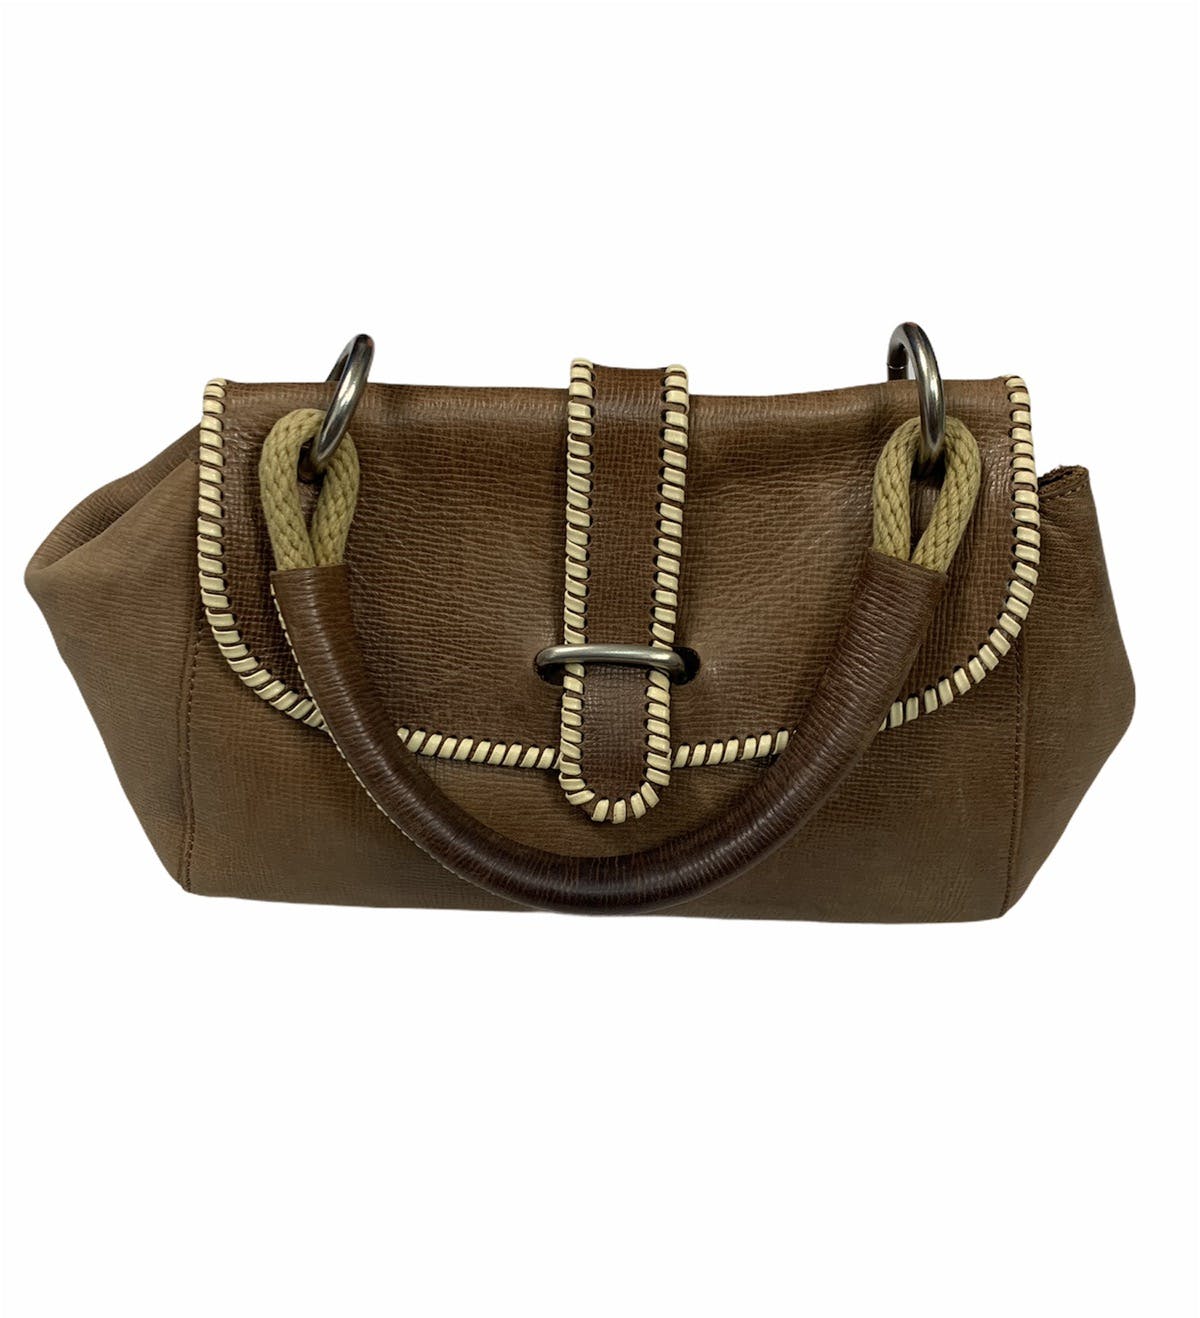 Marni leather handbag - 6